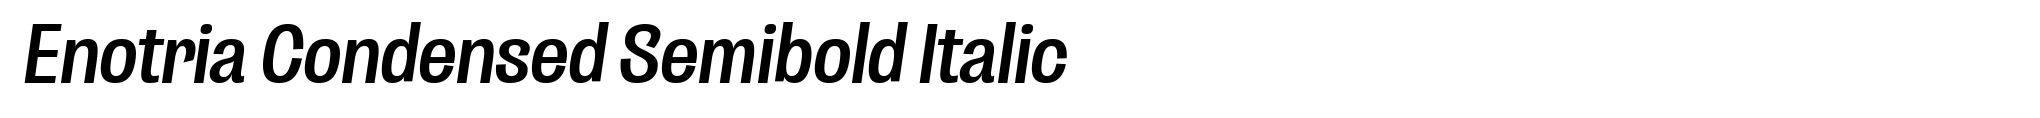 Enotria Condensed Semibold Italic image